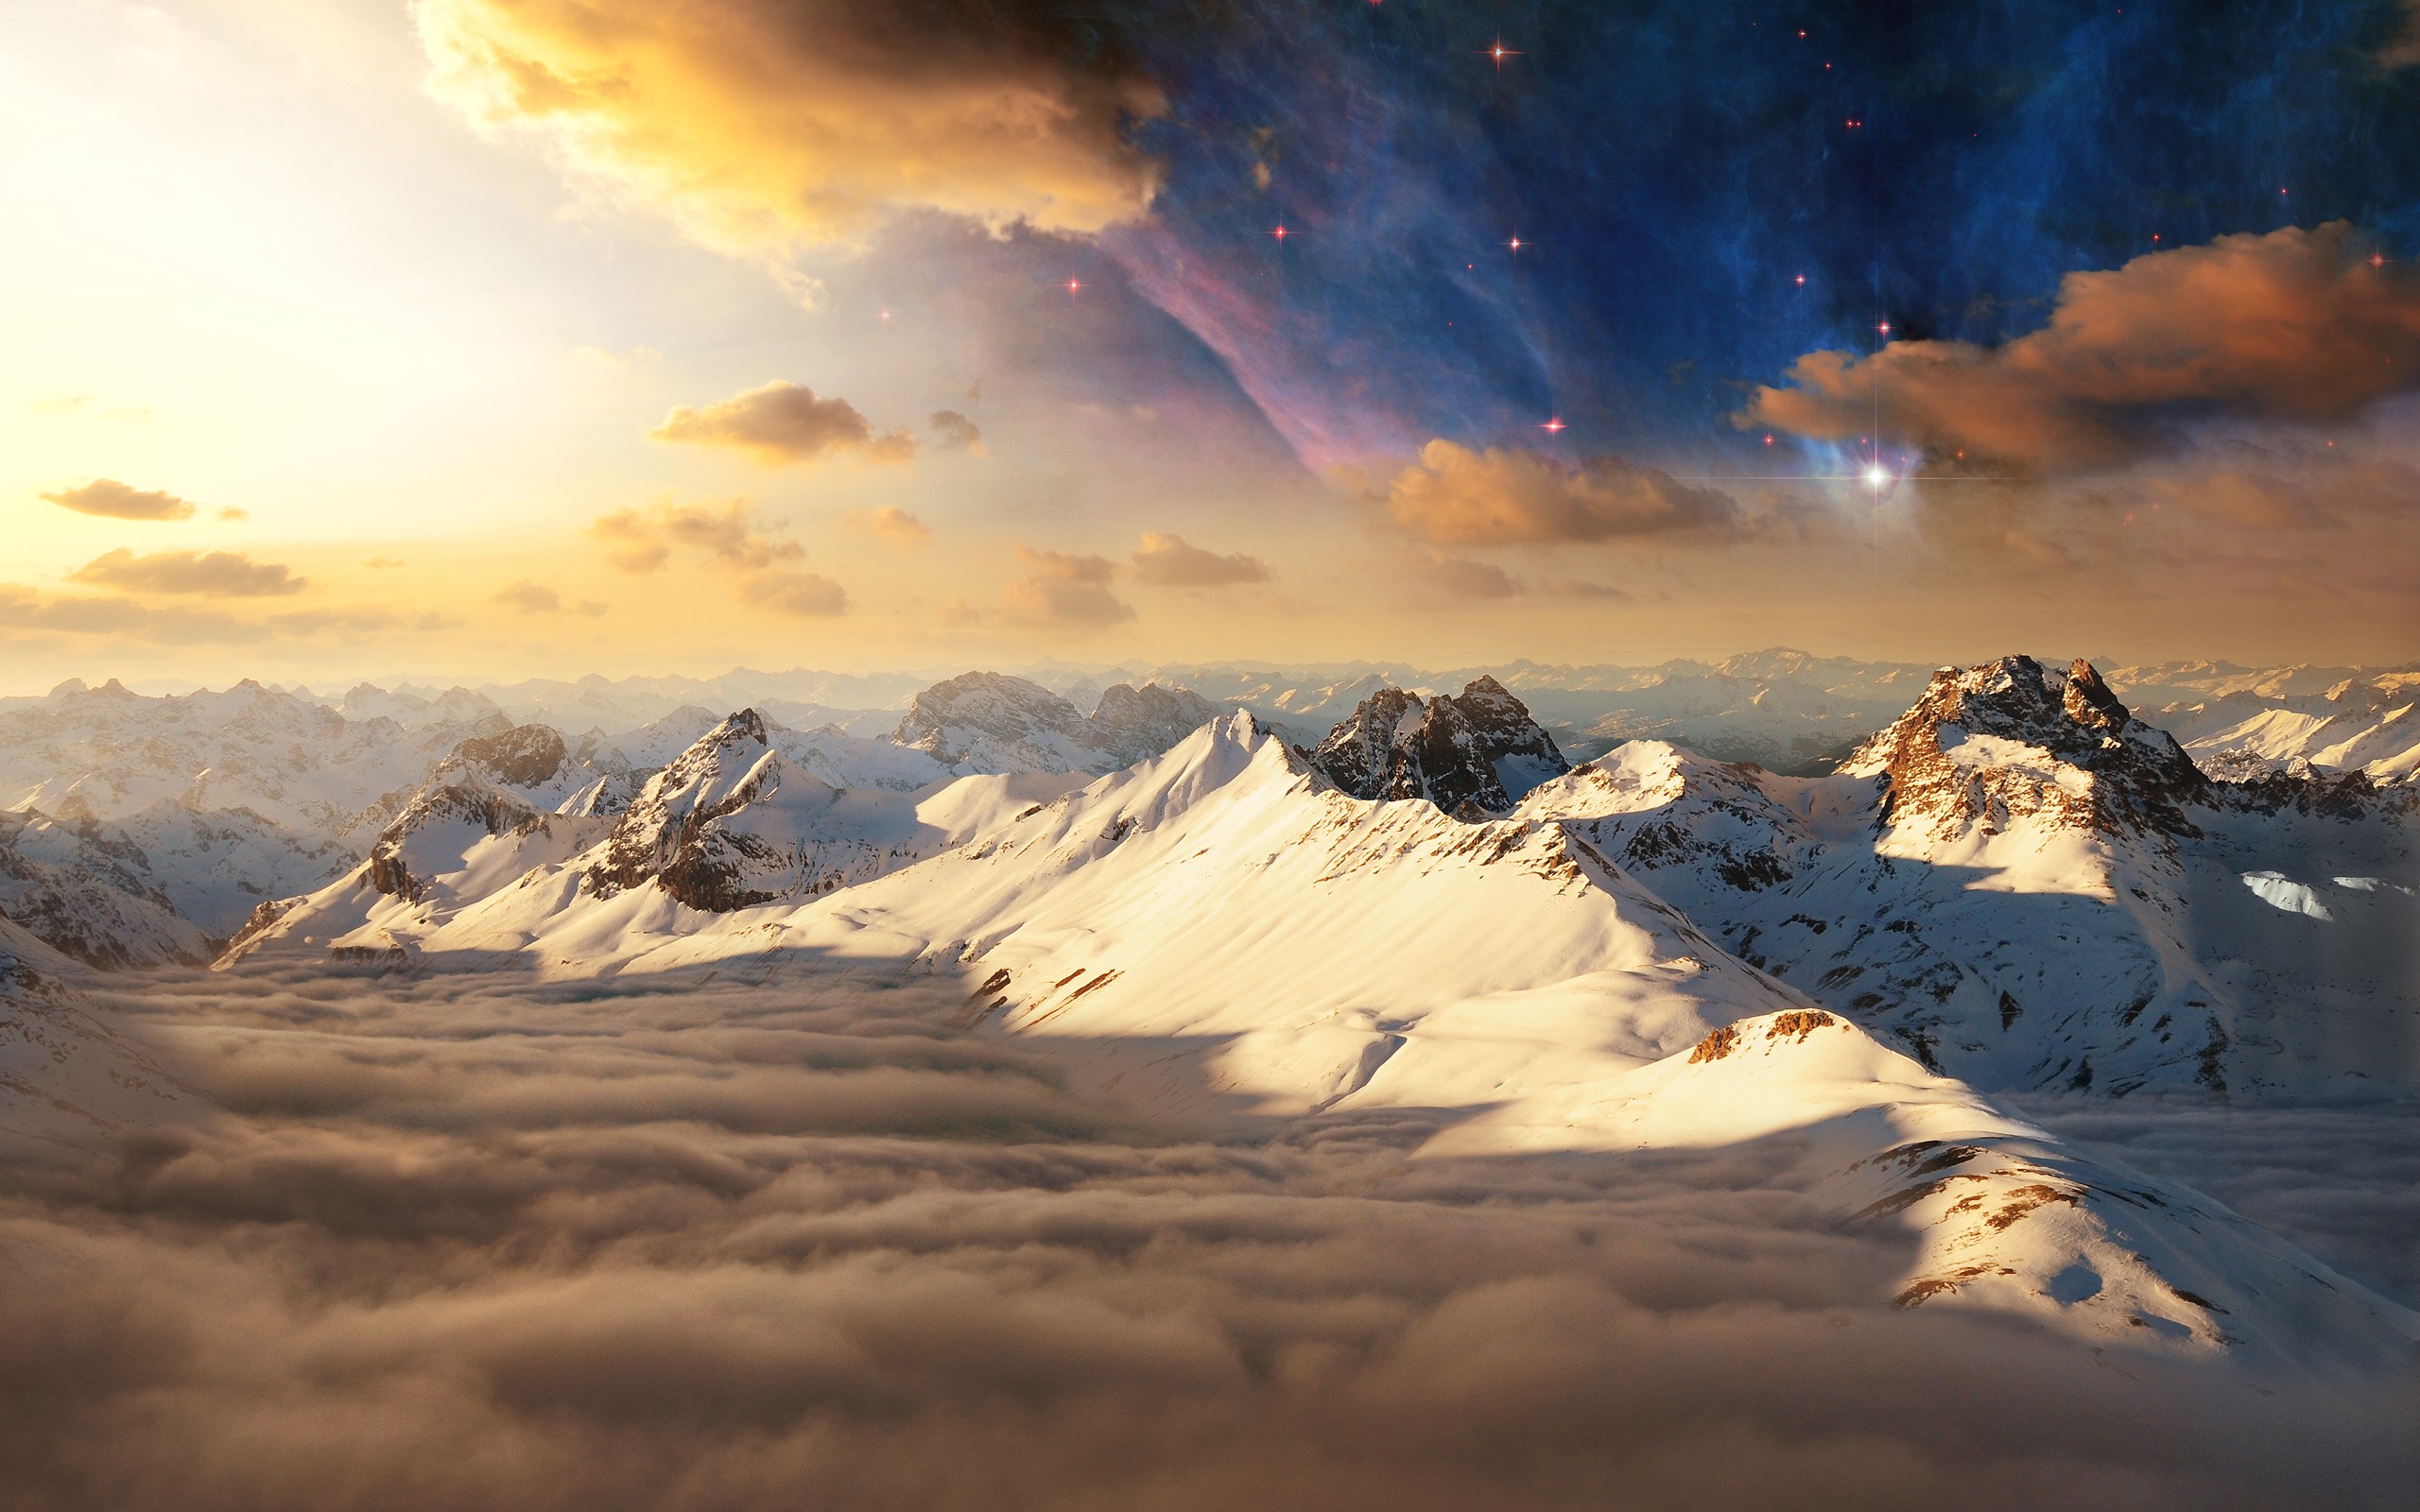 General 2560x1600 mountains nebula clouds photo manipulation